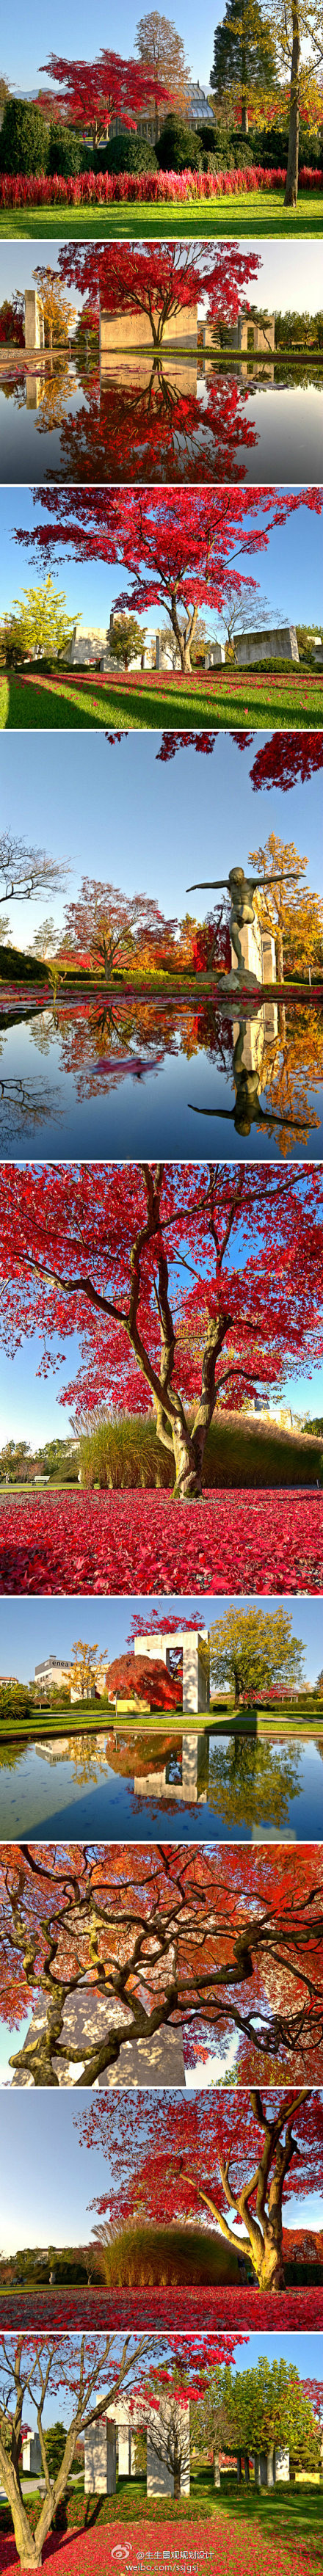 景观设计学习之美国红枫：它属于 落叶大乔...